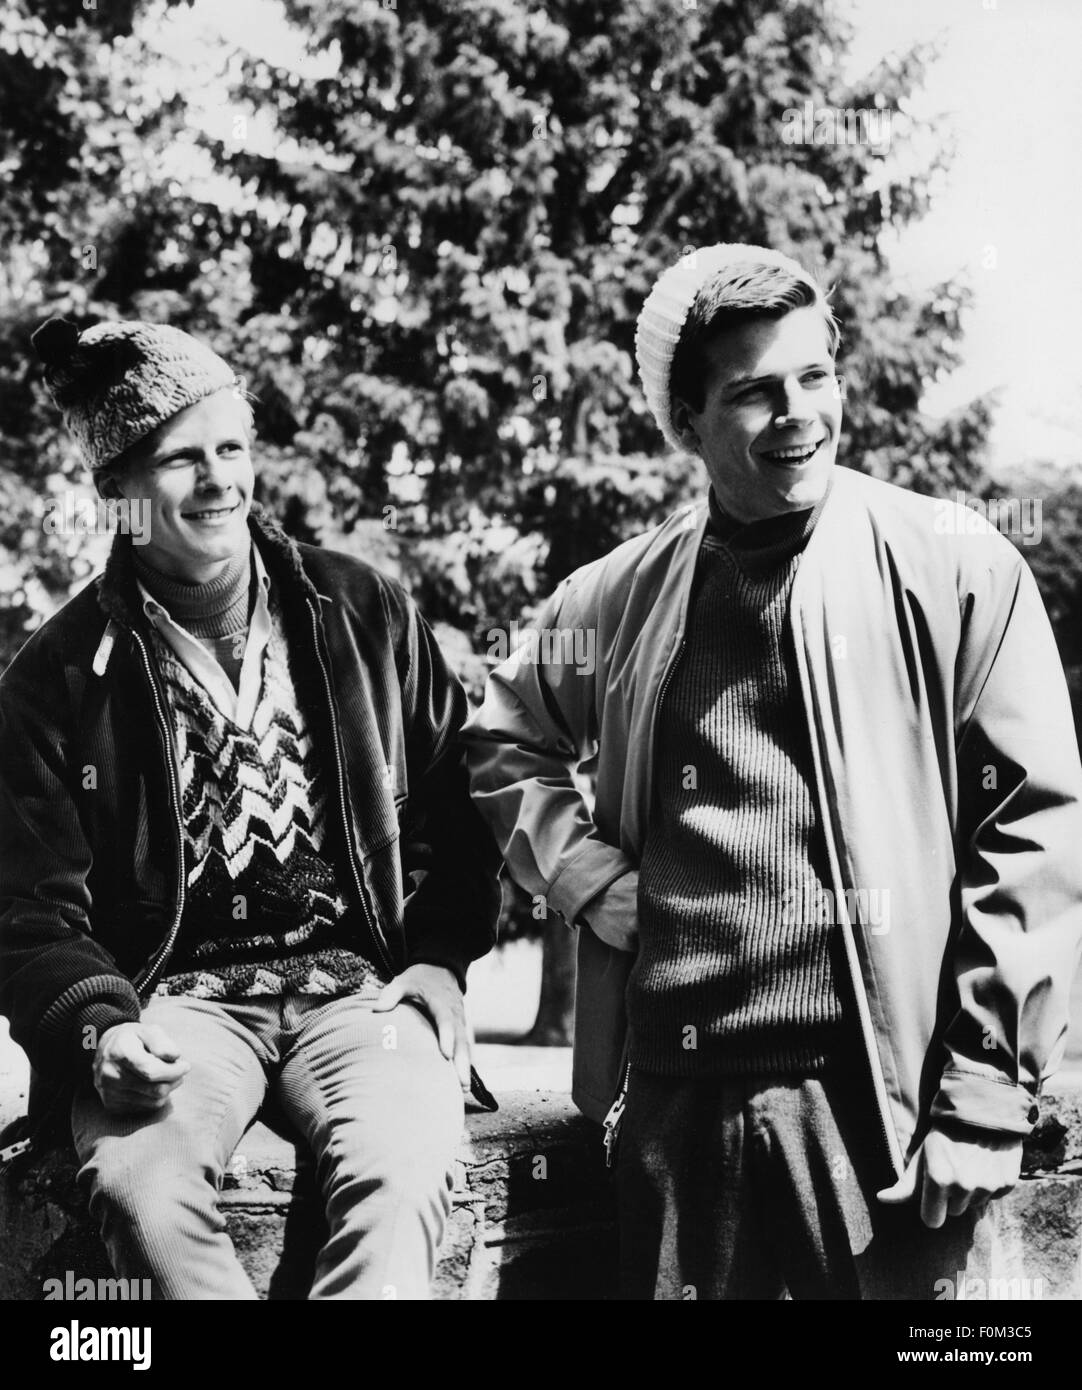 Mode, 60er Jahre, Wintermode, zwei junge Männer mit Mützen und Pullover aus  Wolle, USA, 60er Jahre, Additional-Rights-Clearences-nicht erhältlich  Stockfotografie - Alamy